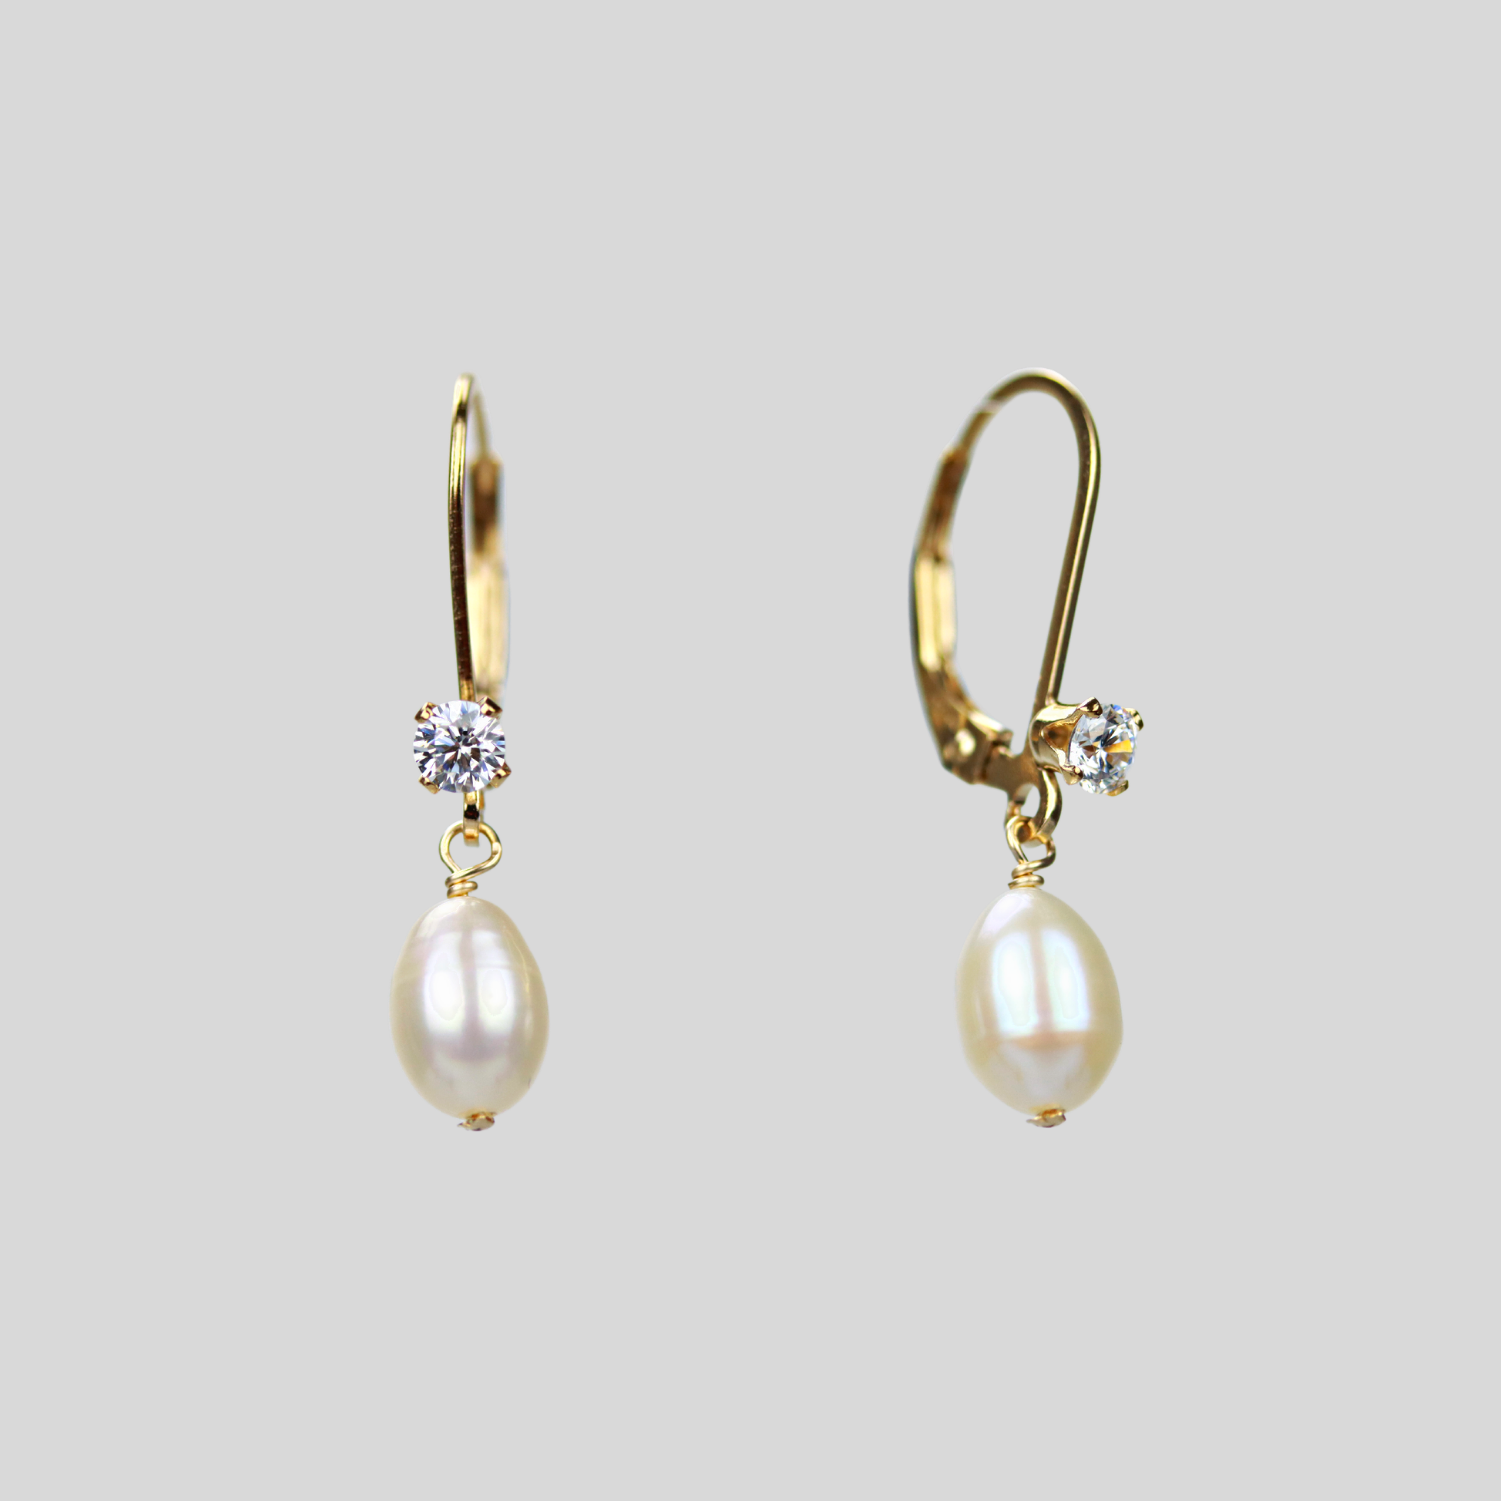 Dangling pearl teardrop earrings